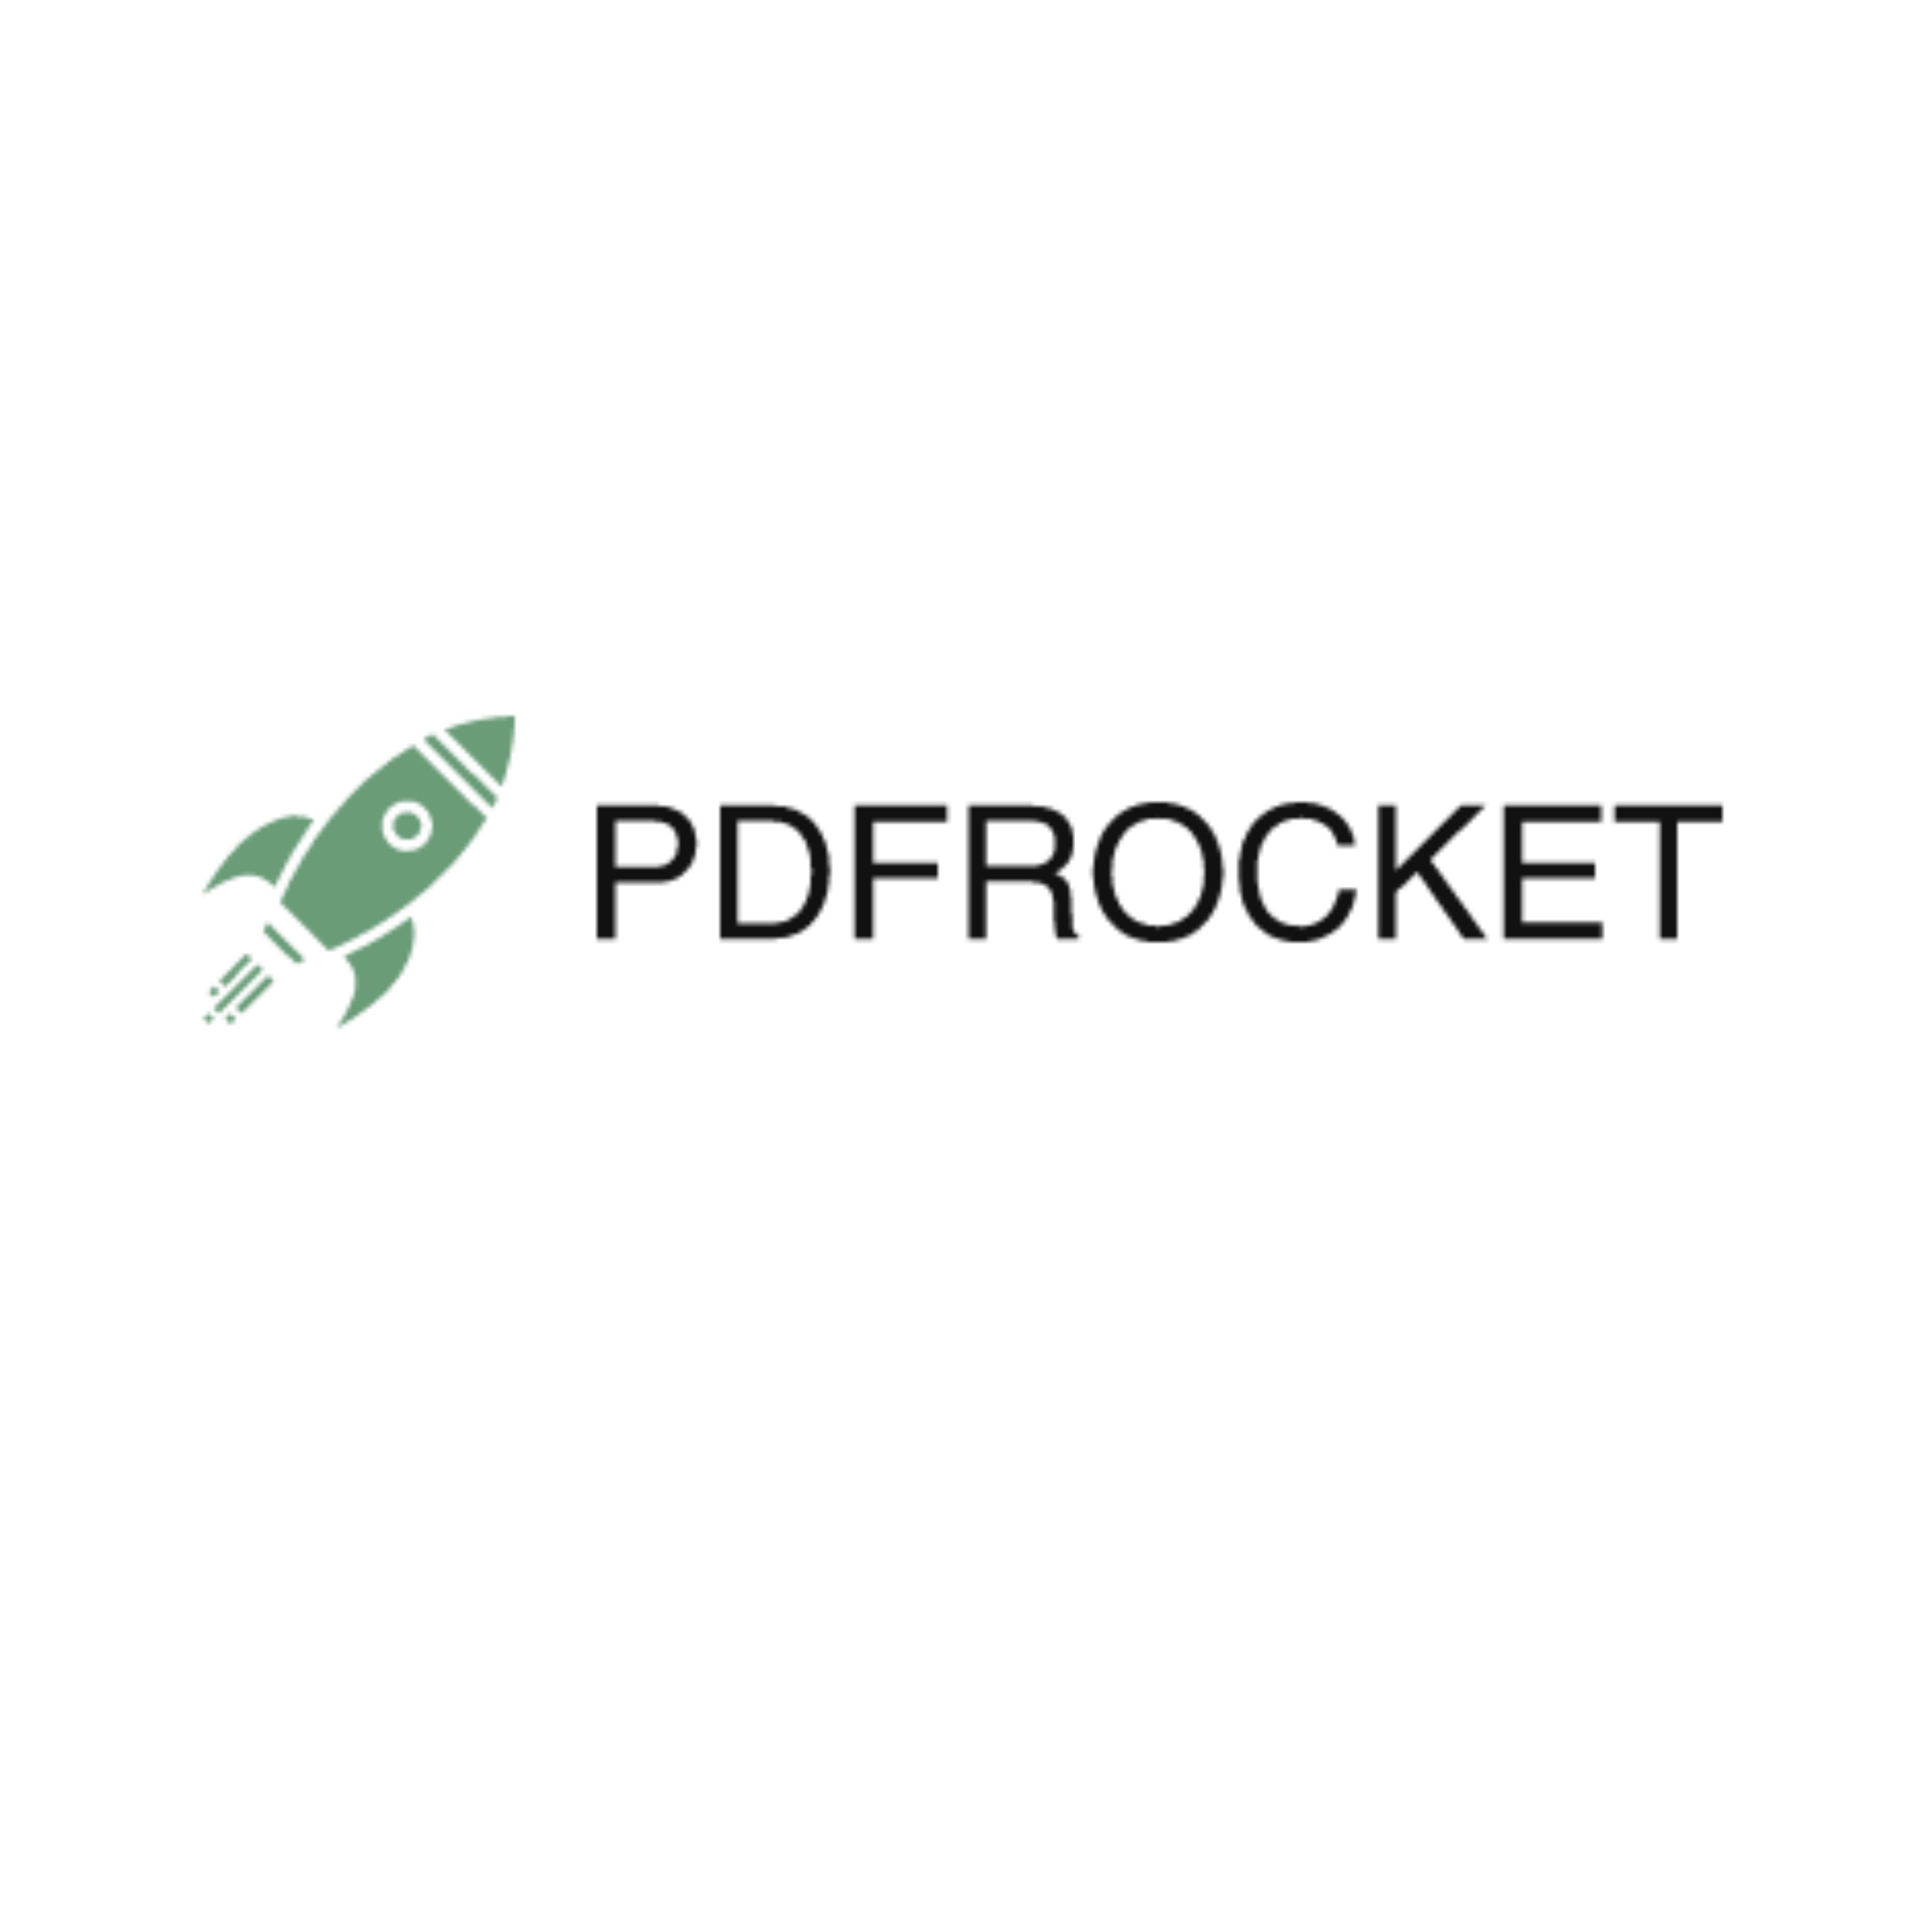 PDF Rocket